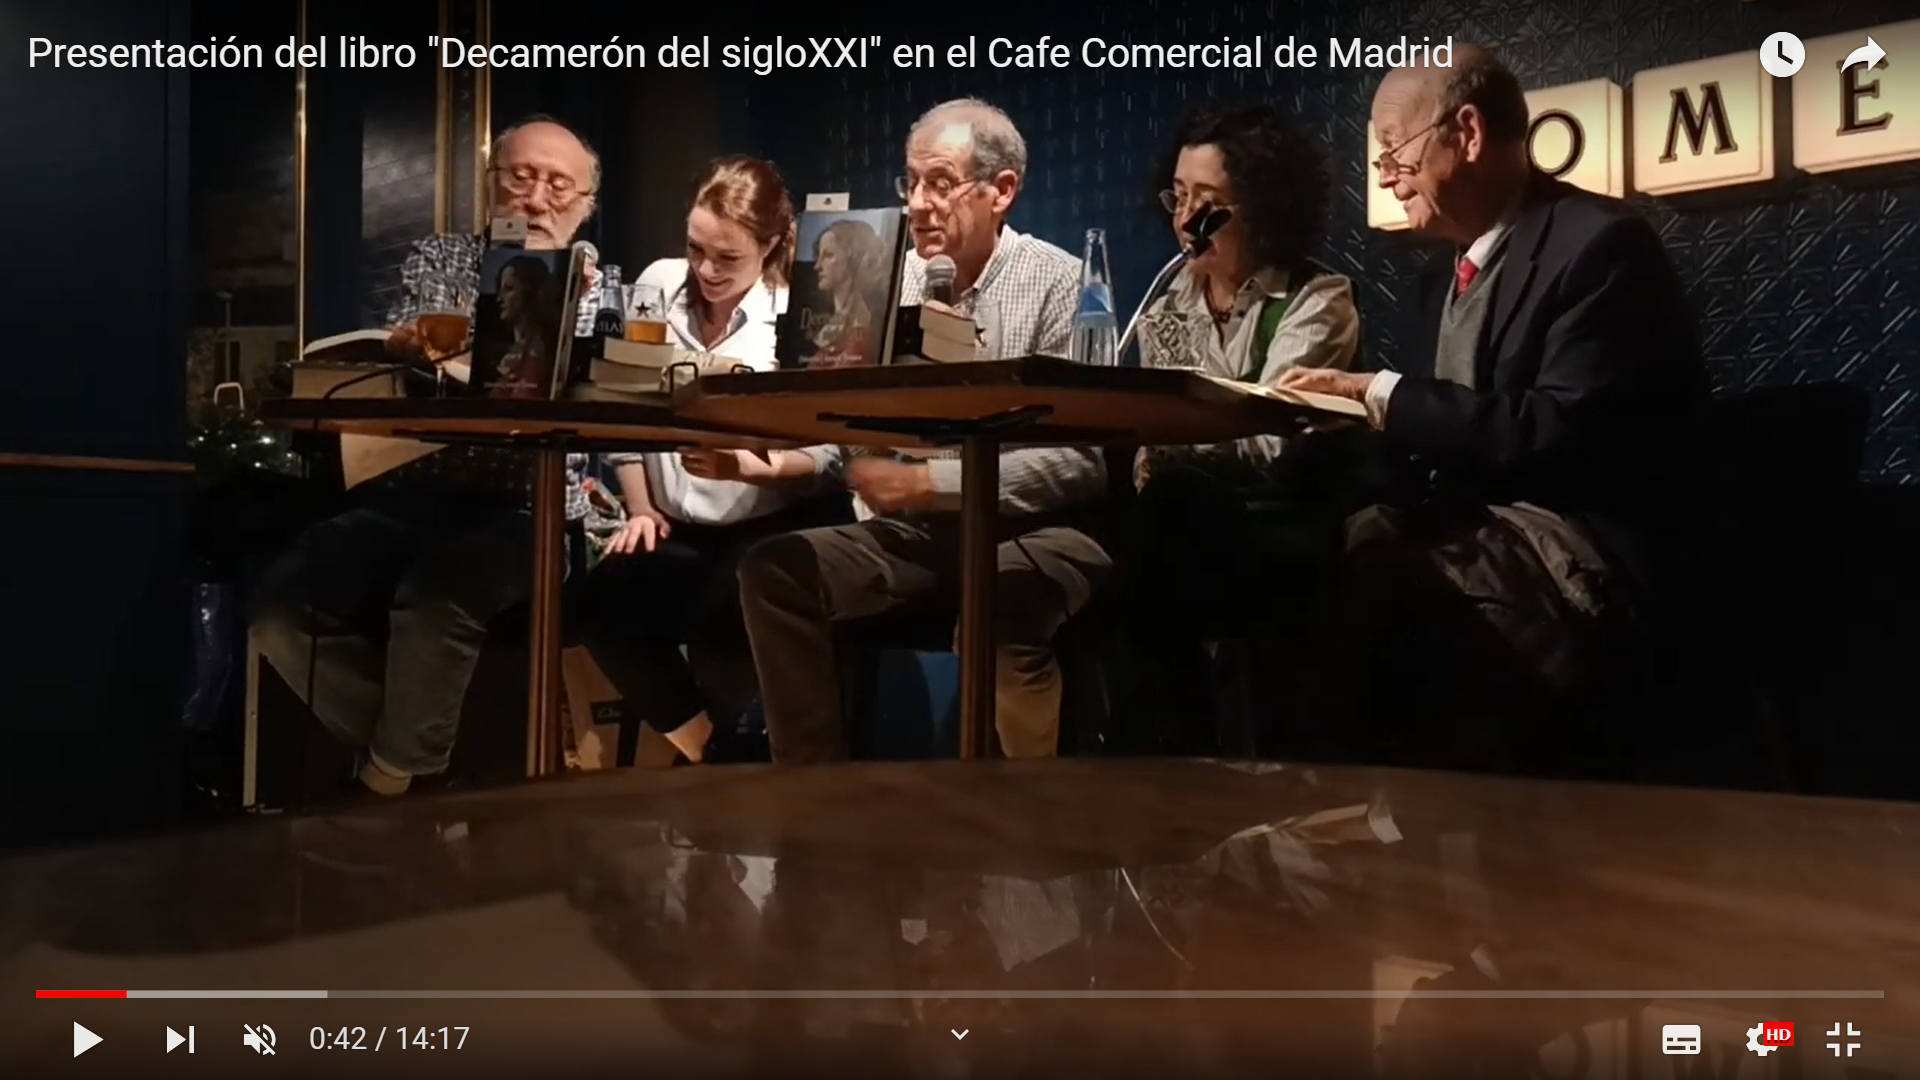 Presentación del libro "Decamerón del sigloXXI" en el Cafe Comercial de Madrid